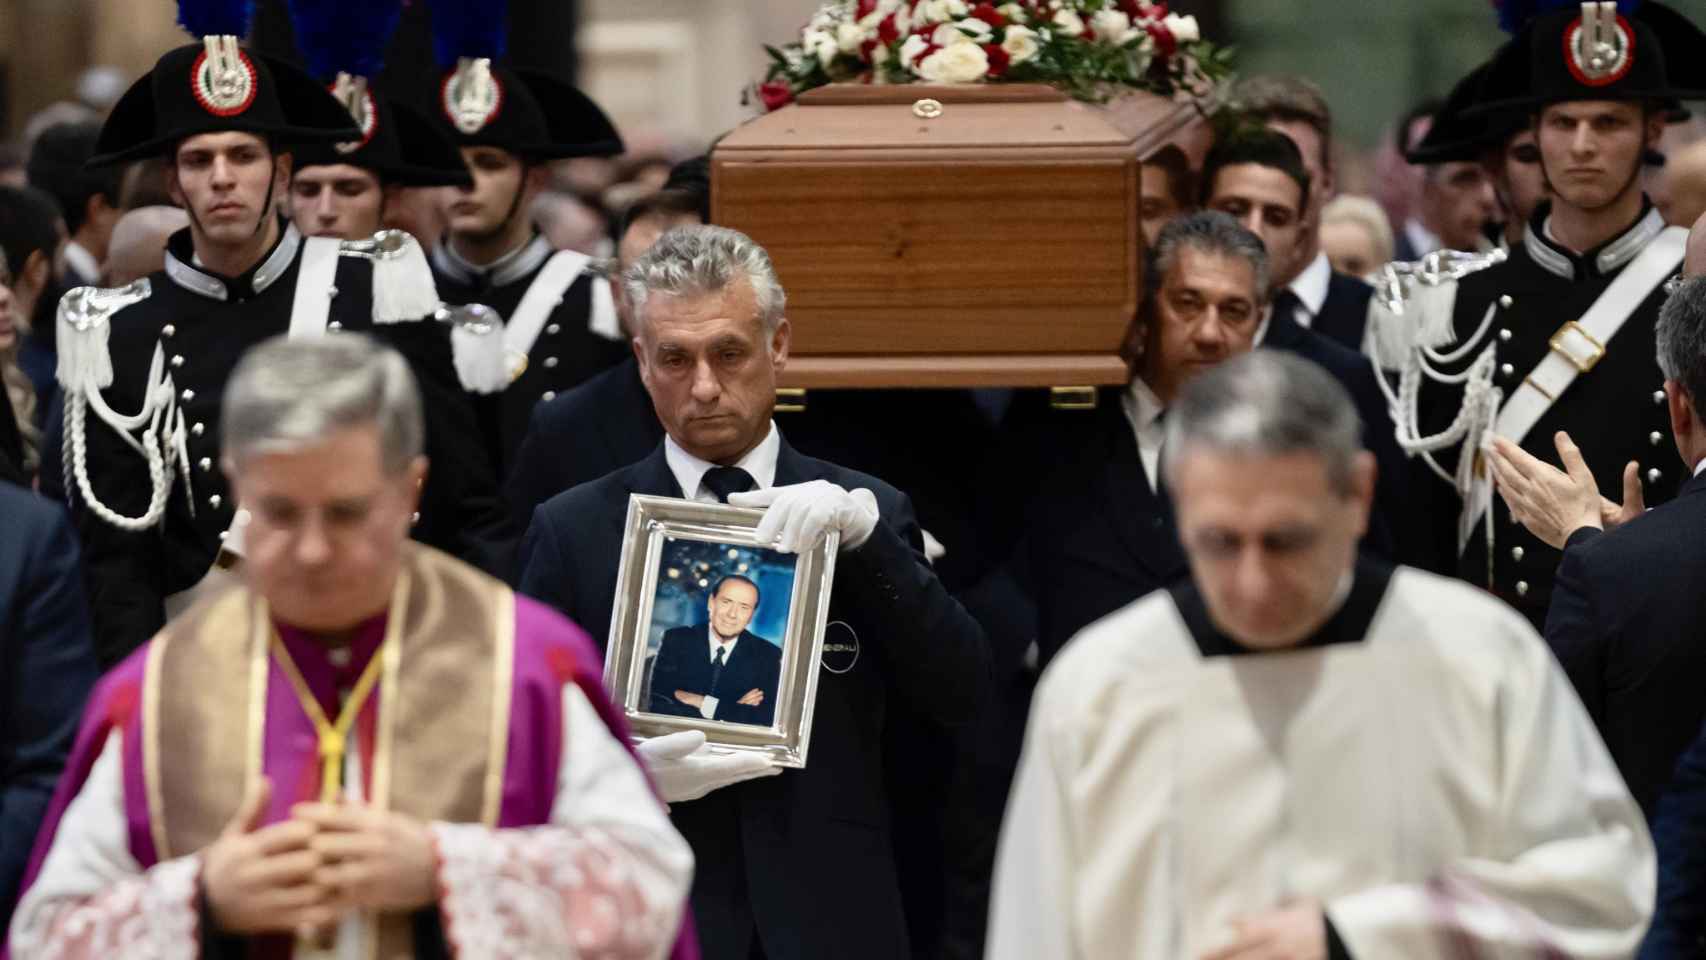 Un retrato de Silvio Berlusconi ante su féretro durante el funeral de Estado en el Duomo de Milán.